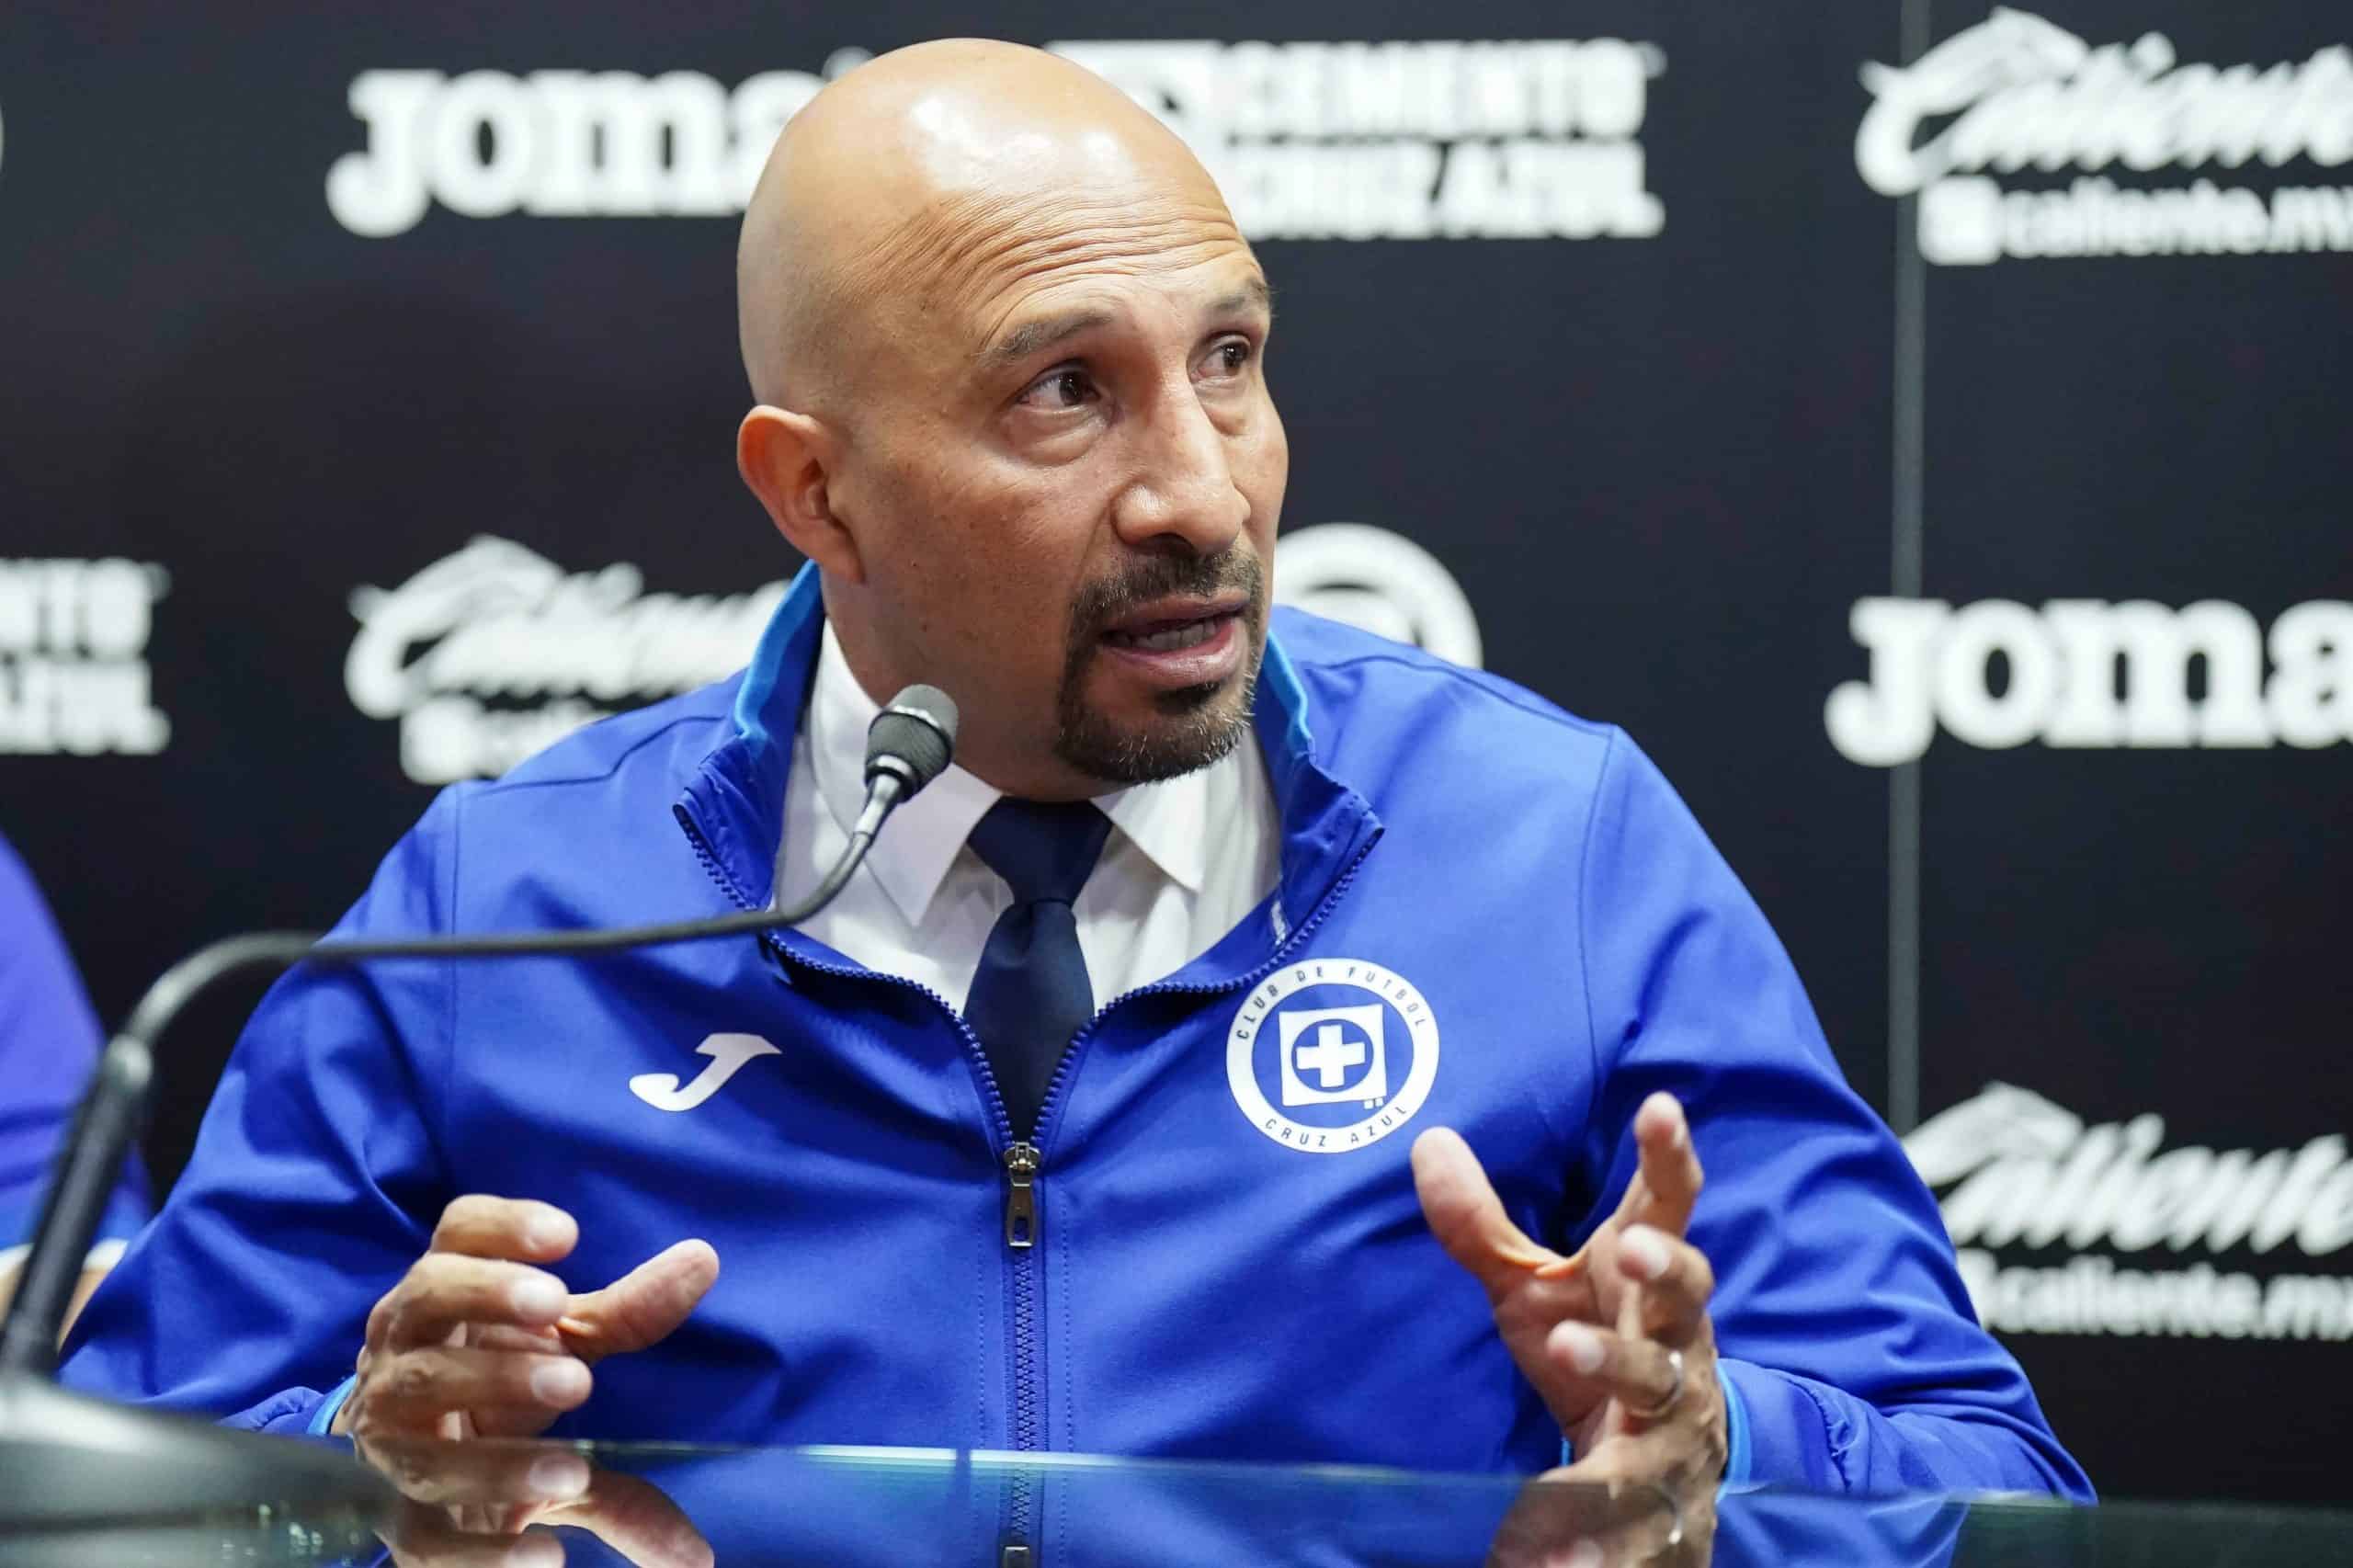 El Conejo Pérez fue destituido del cargo de Director Deportivo de Cruz Azul